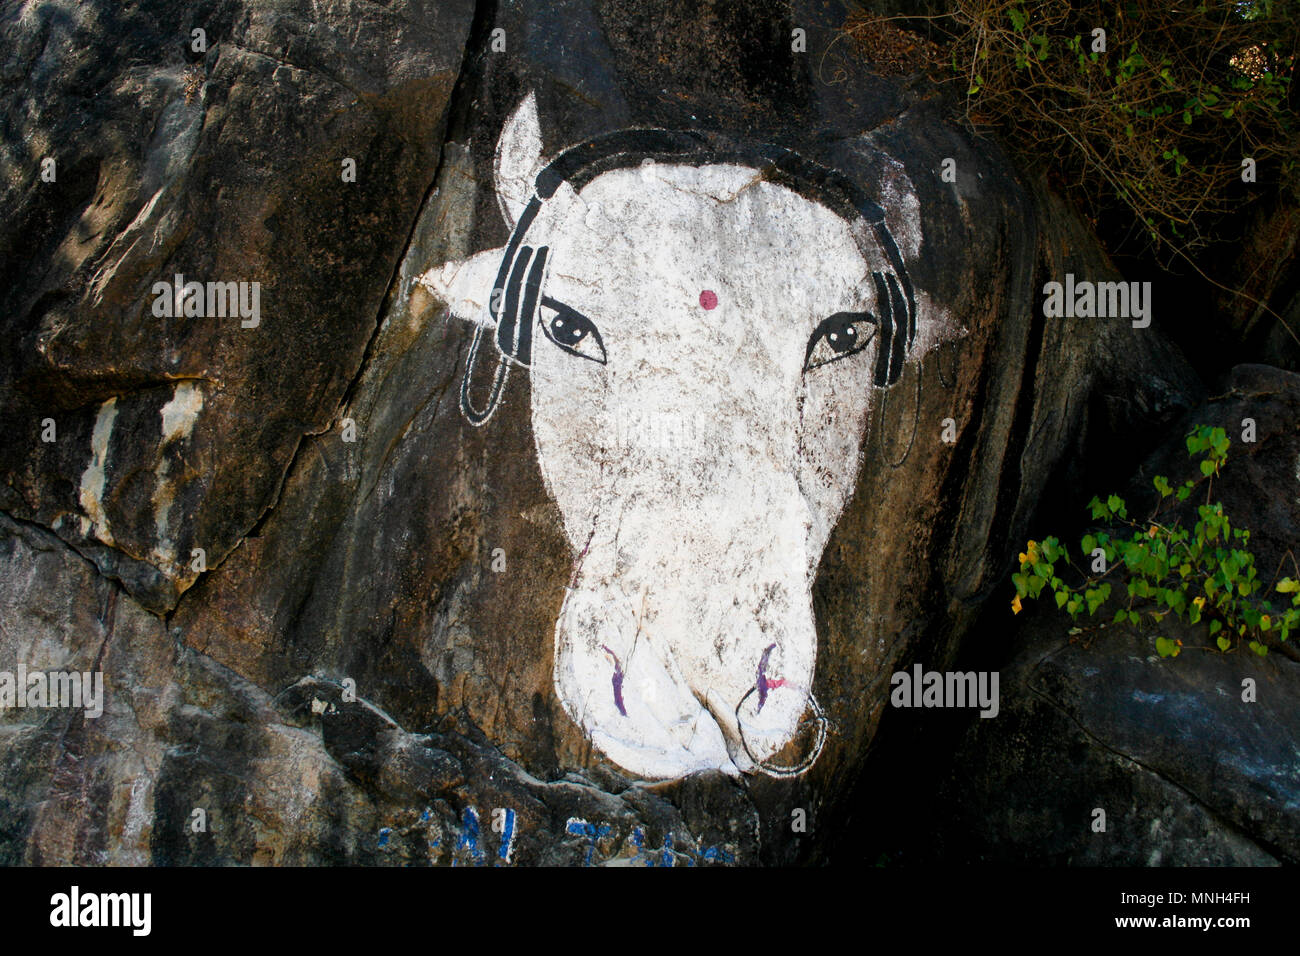 Peinture vache sainte trouvés sur un rocher, plage de Palolem, Goa, Inde Banque D'Images